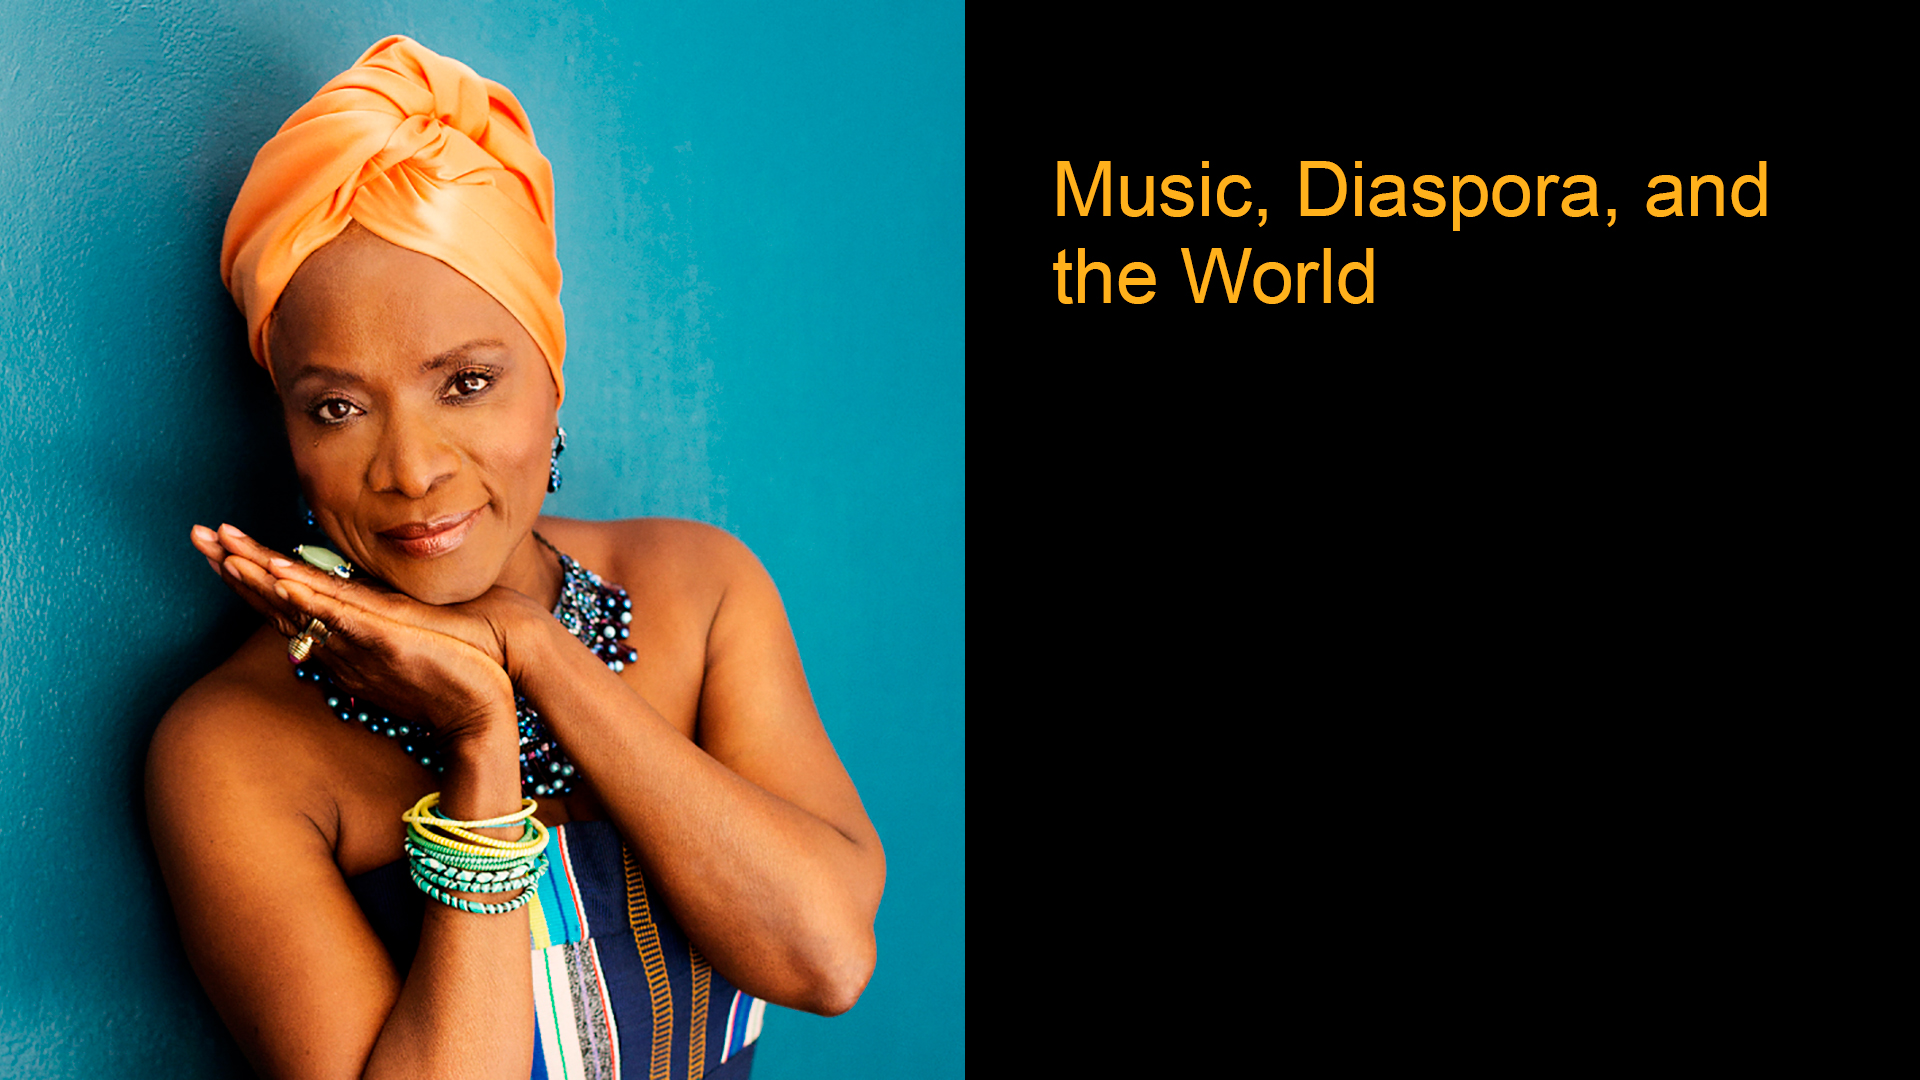 Music, Diaspora, and the World: A Conversation with Angélique Kidjo